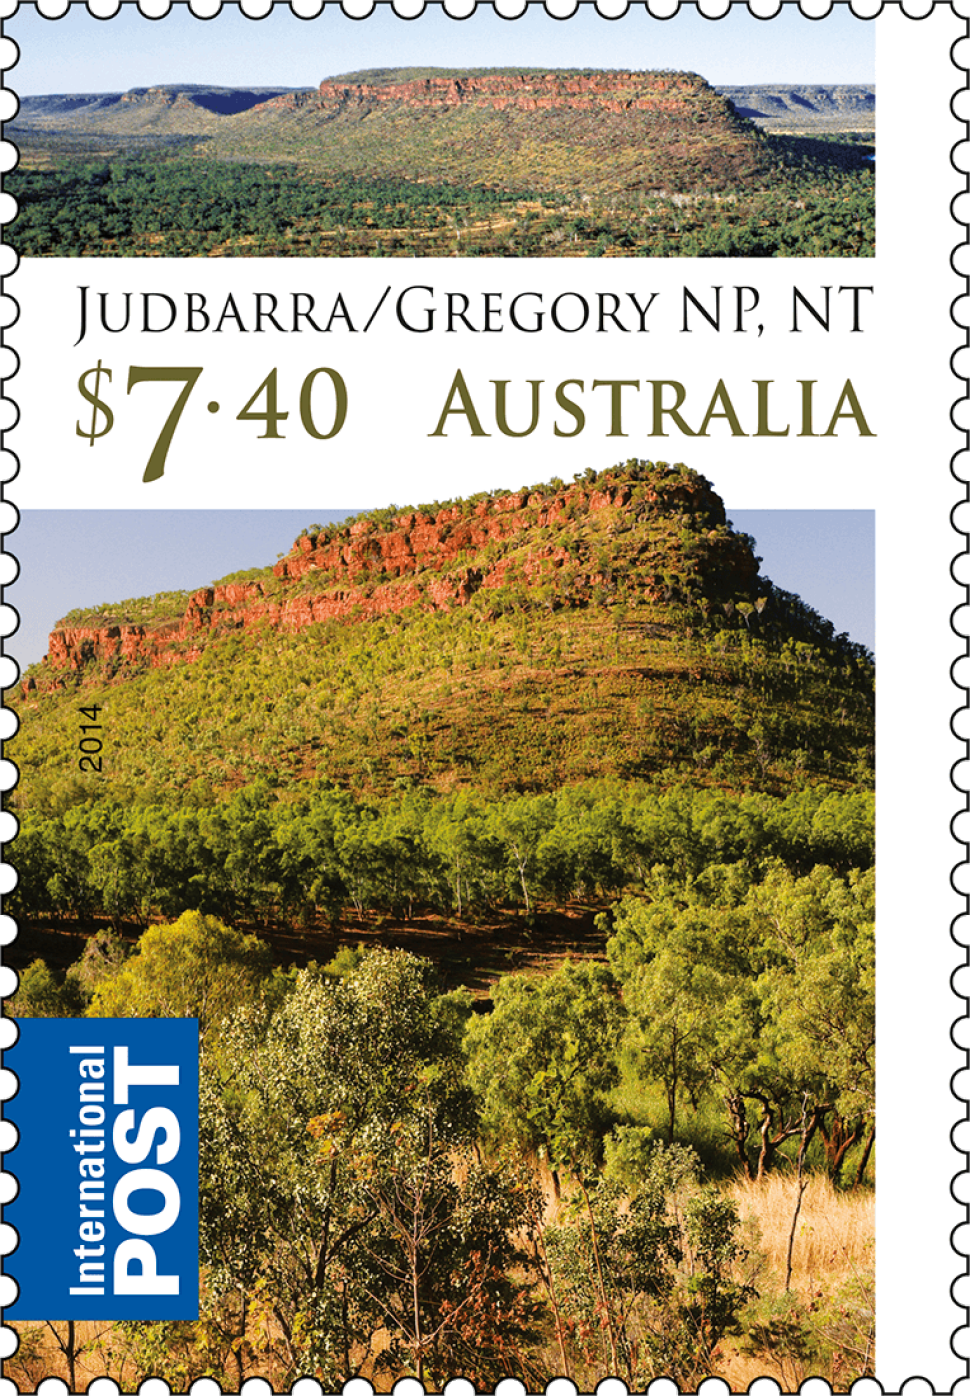 $7.40 Judbarra/Gregory National Park, NT